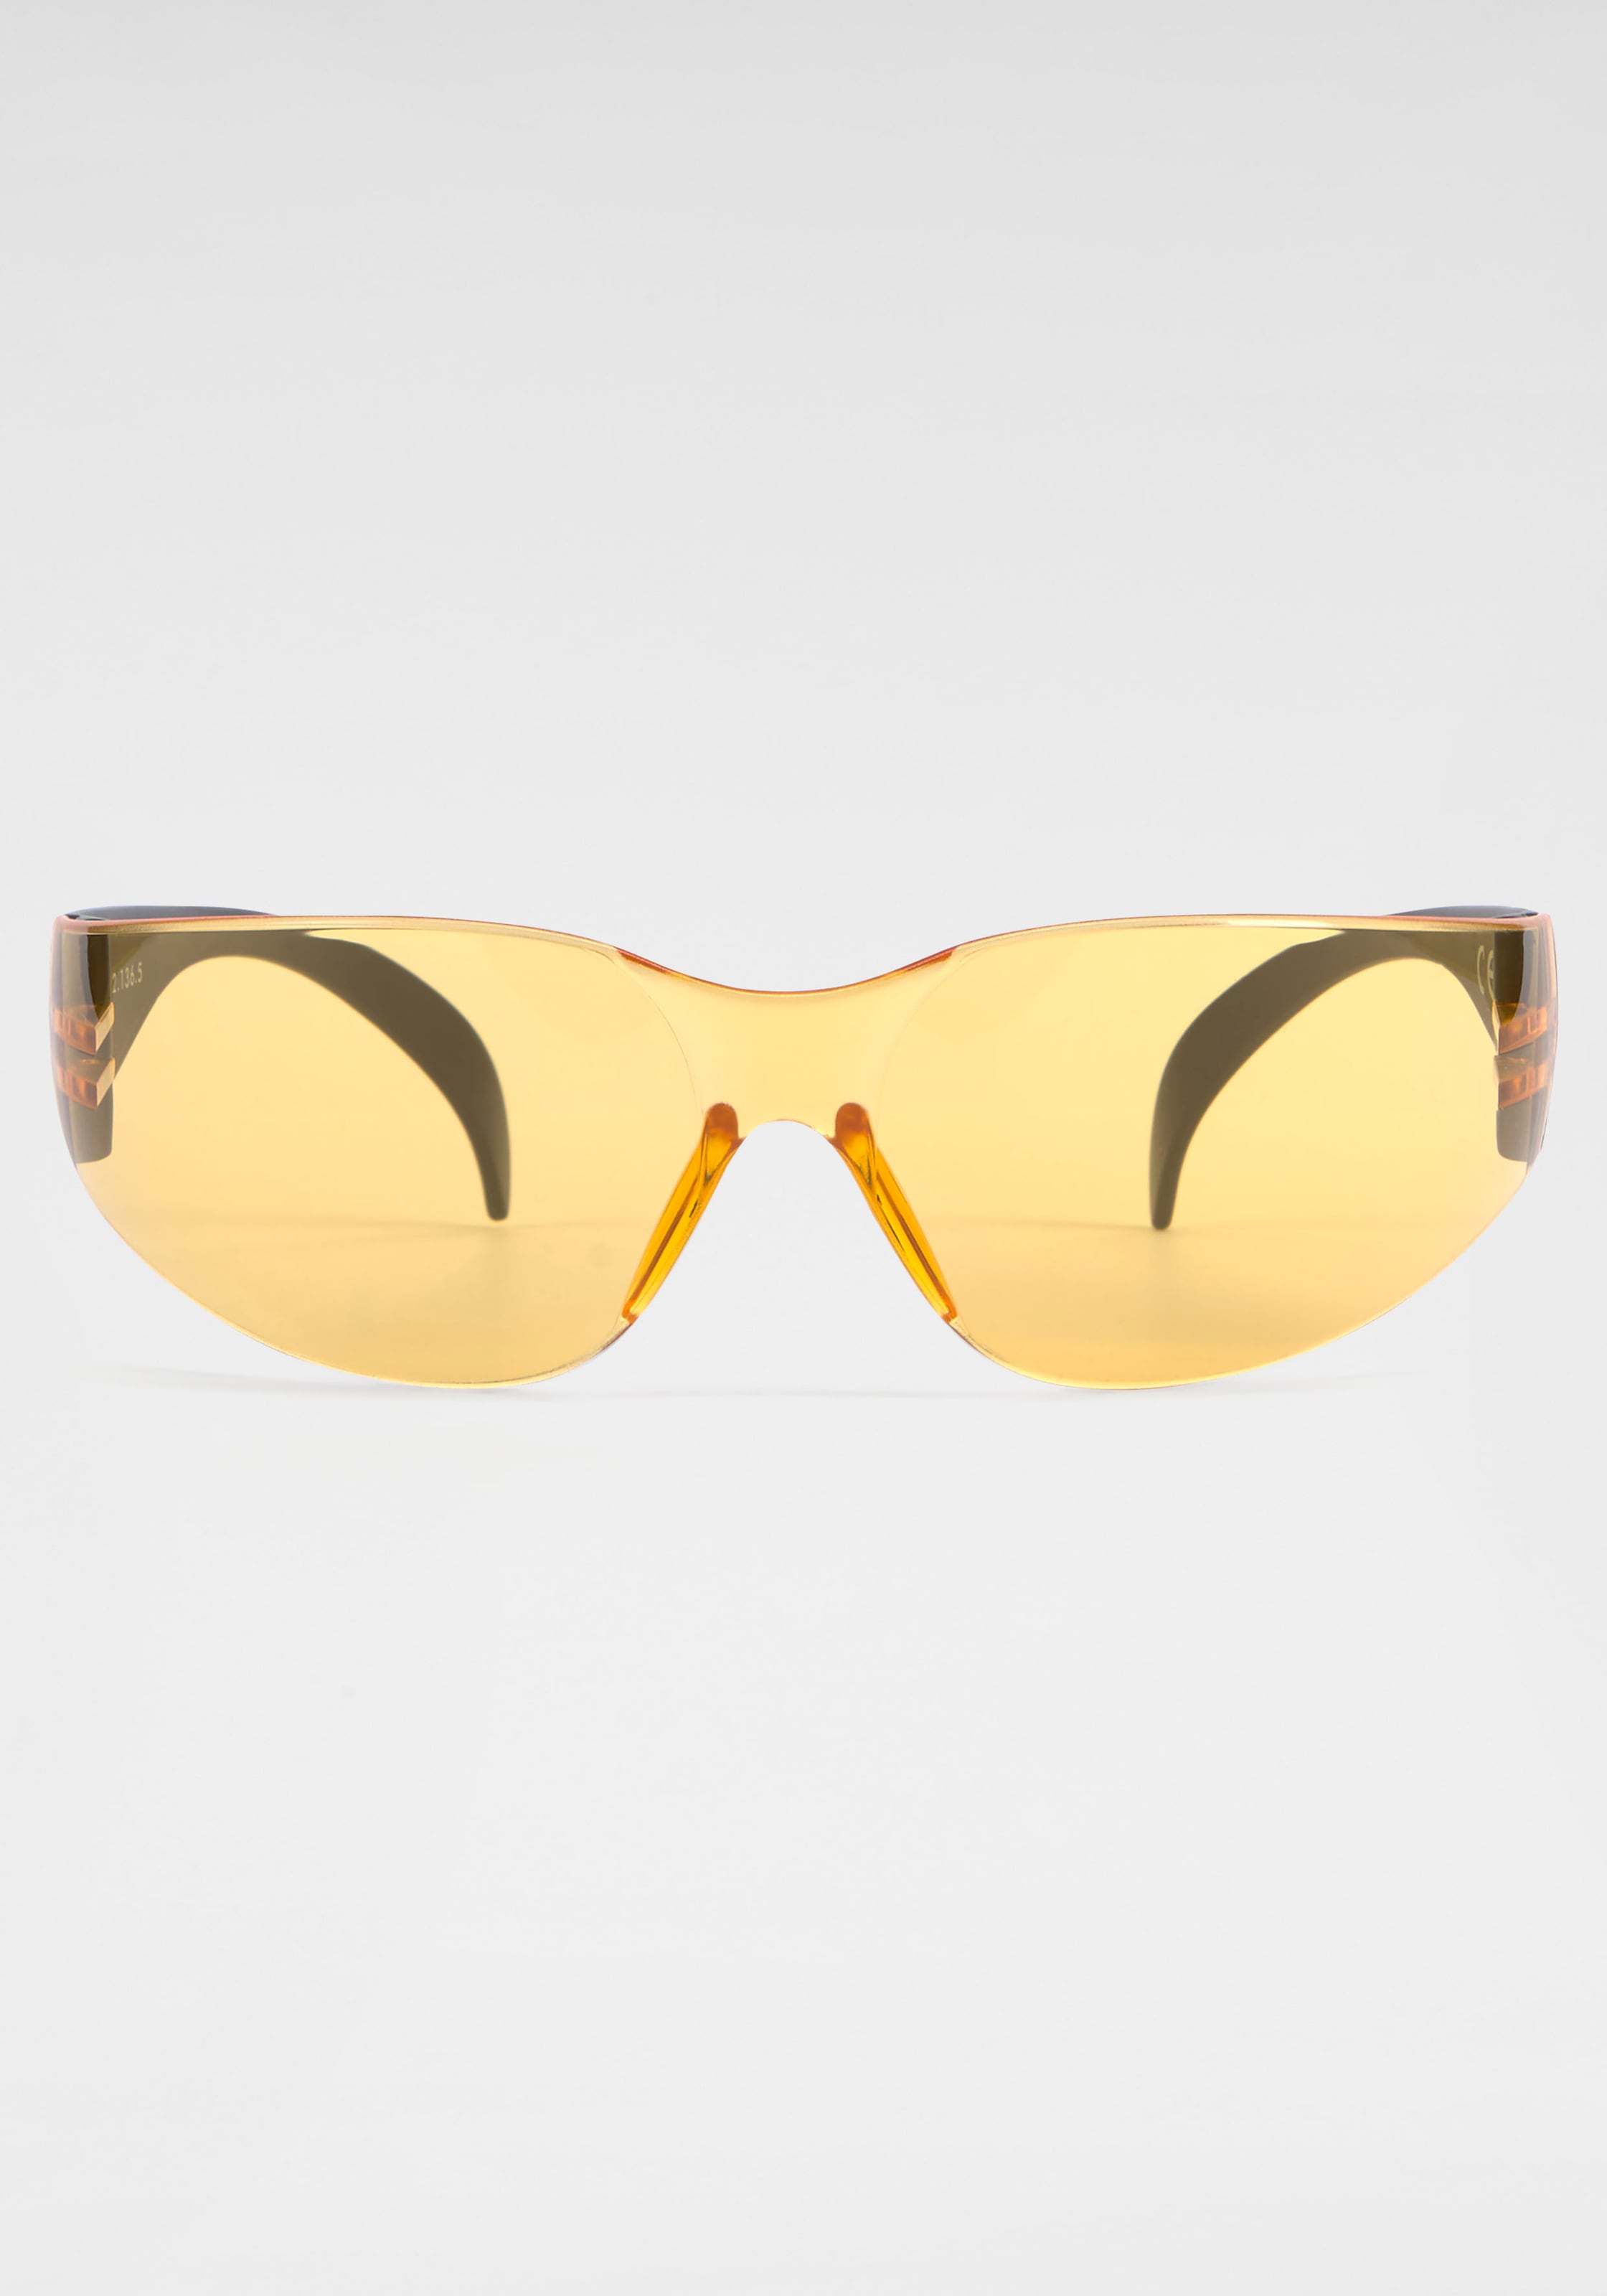 BACK IN BLACK Eyewear Sonnenbrille, BAUR kaufen für Randlos 